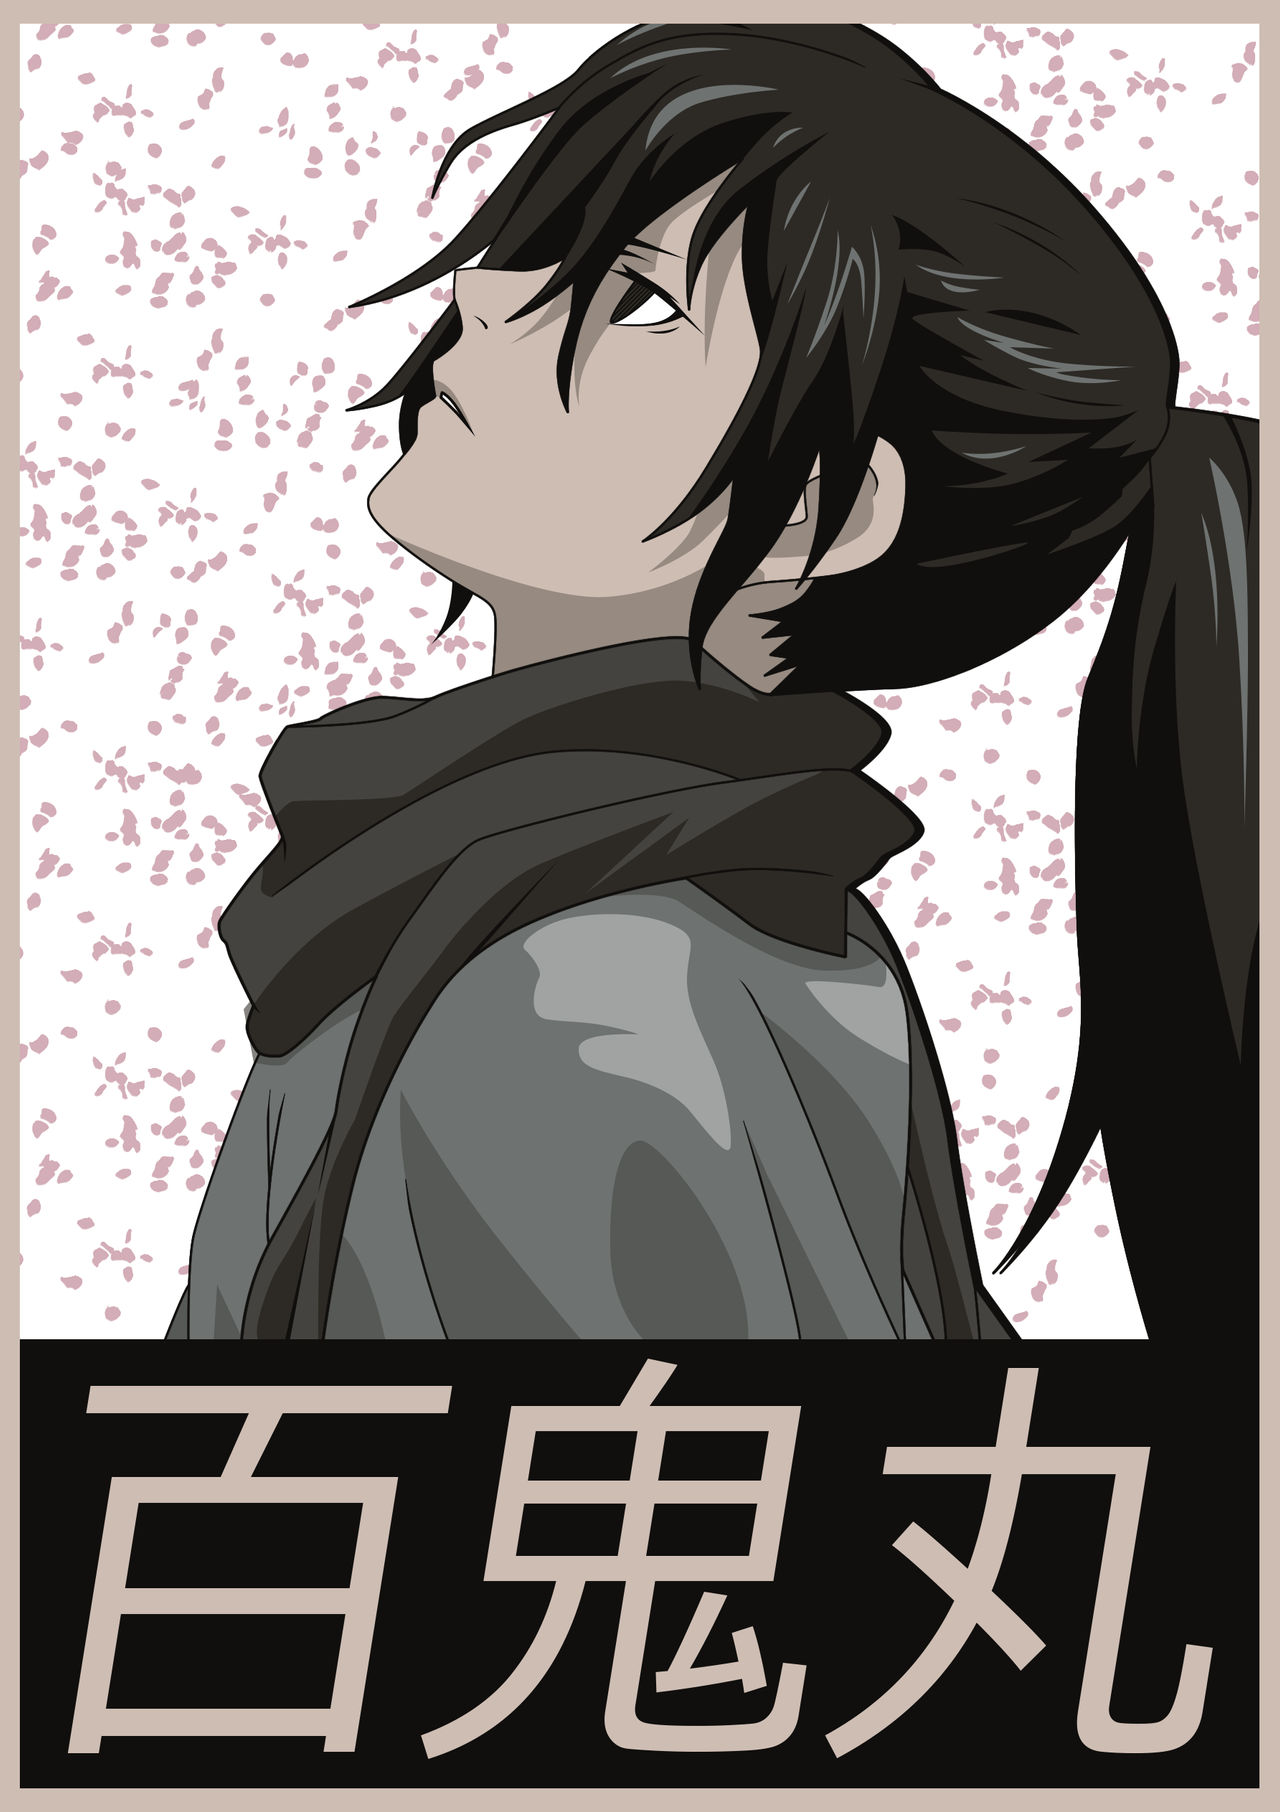 hyakkimaru - Dororo anime | Poster